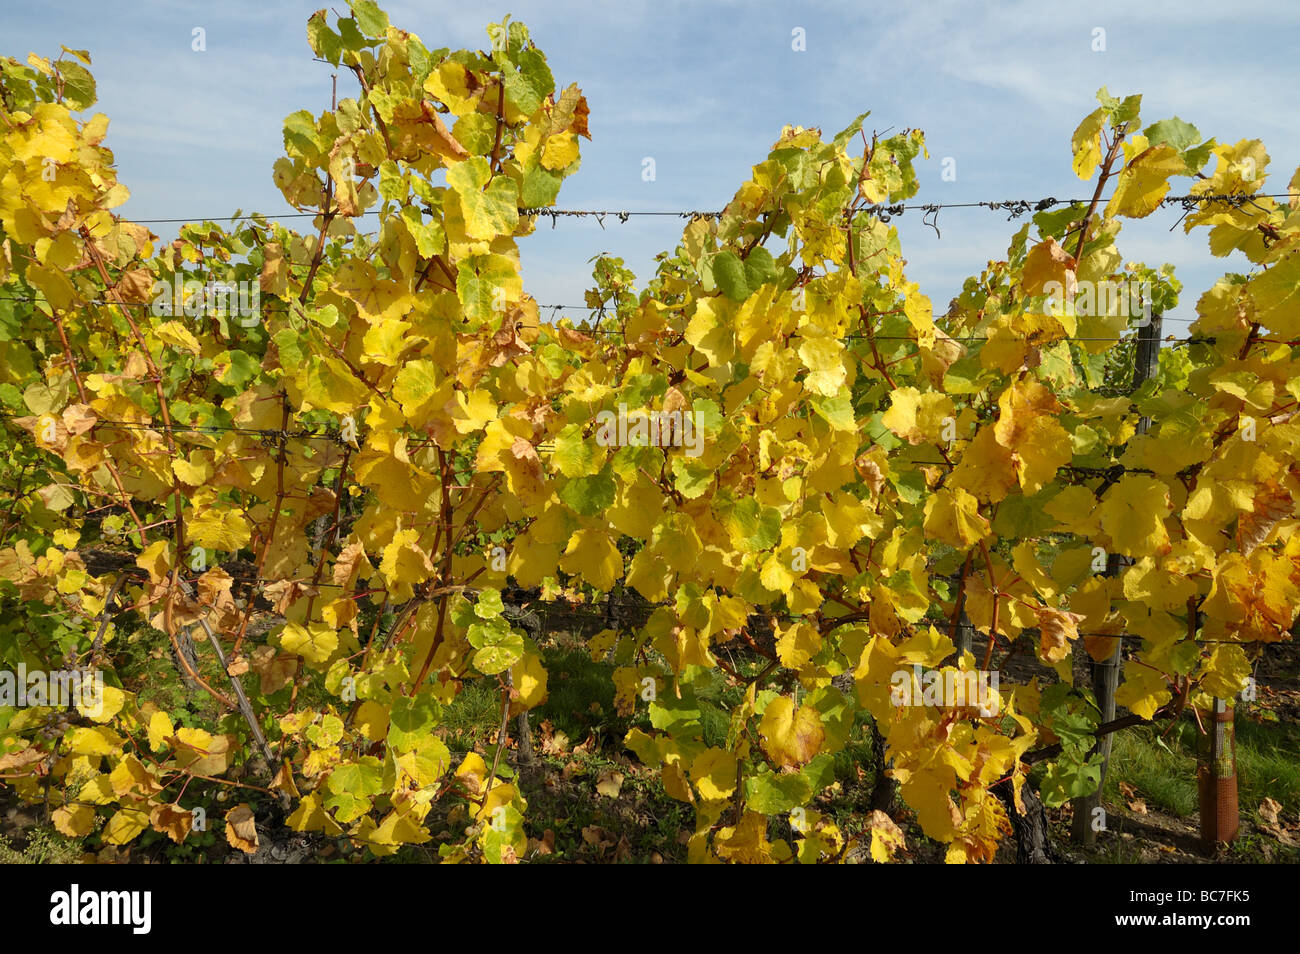 La vigne dans leurs couleurs d'automne Alsace France Banque D'Images